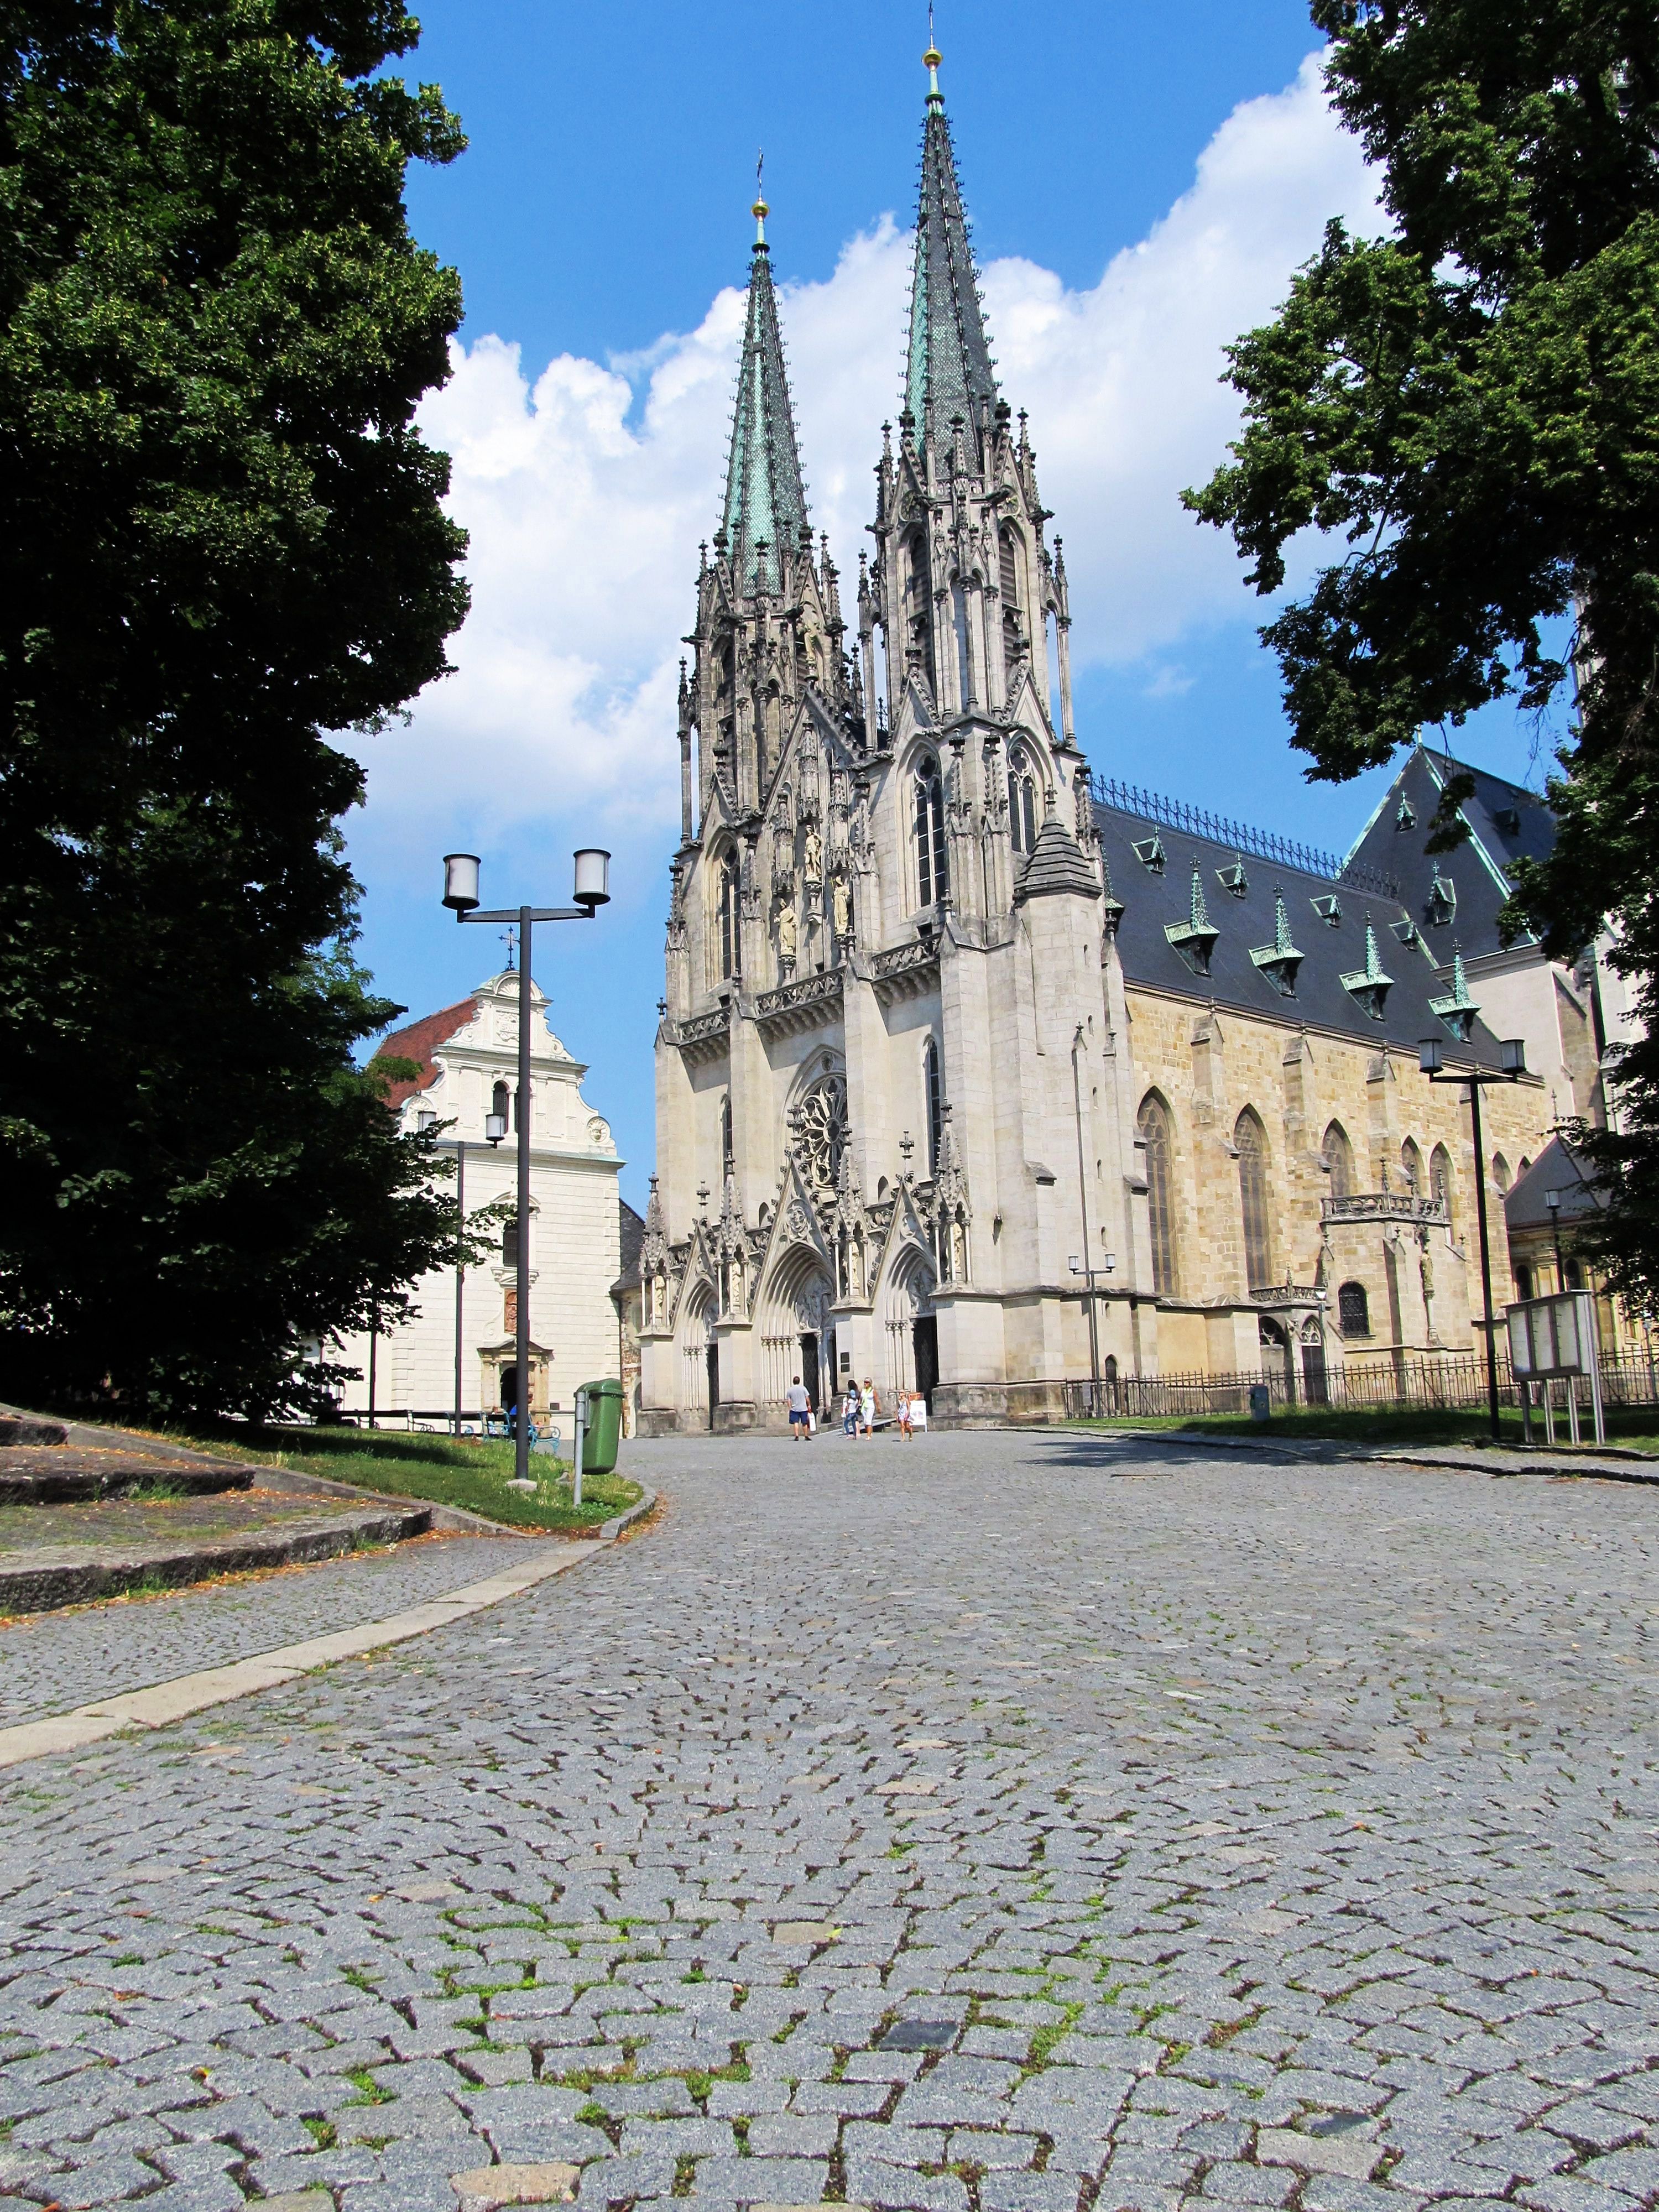 Katedrála sv. Václava - nejvýznamnější římskokatolický chrám na Moravě